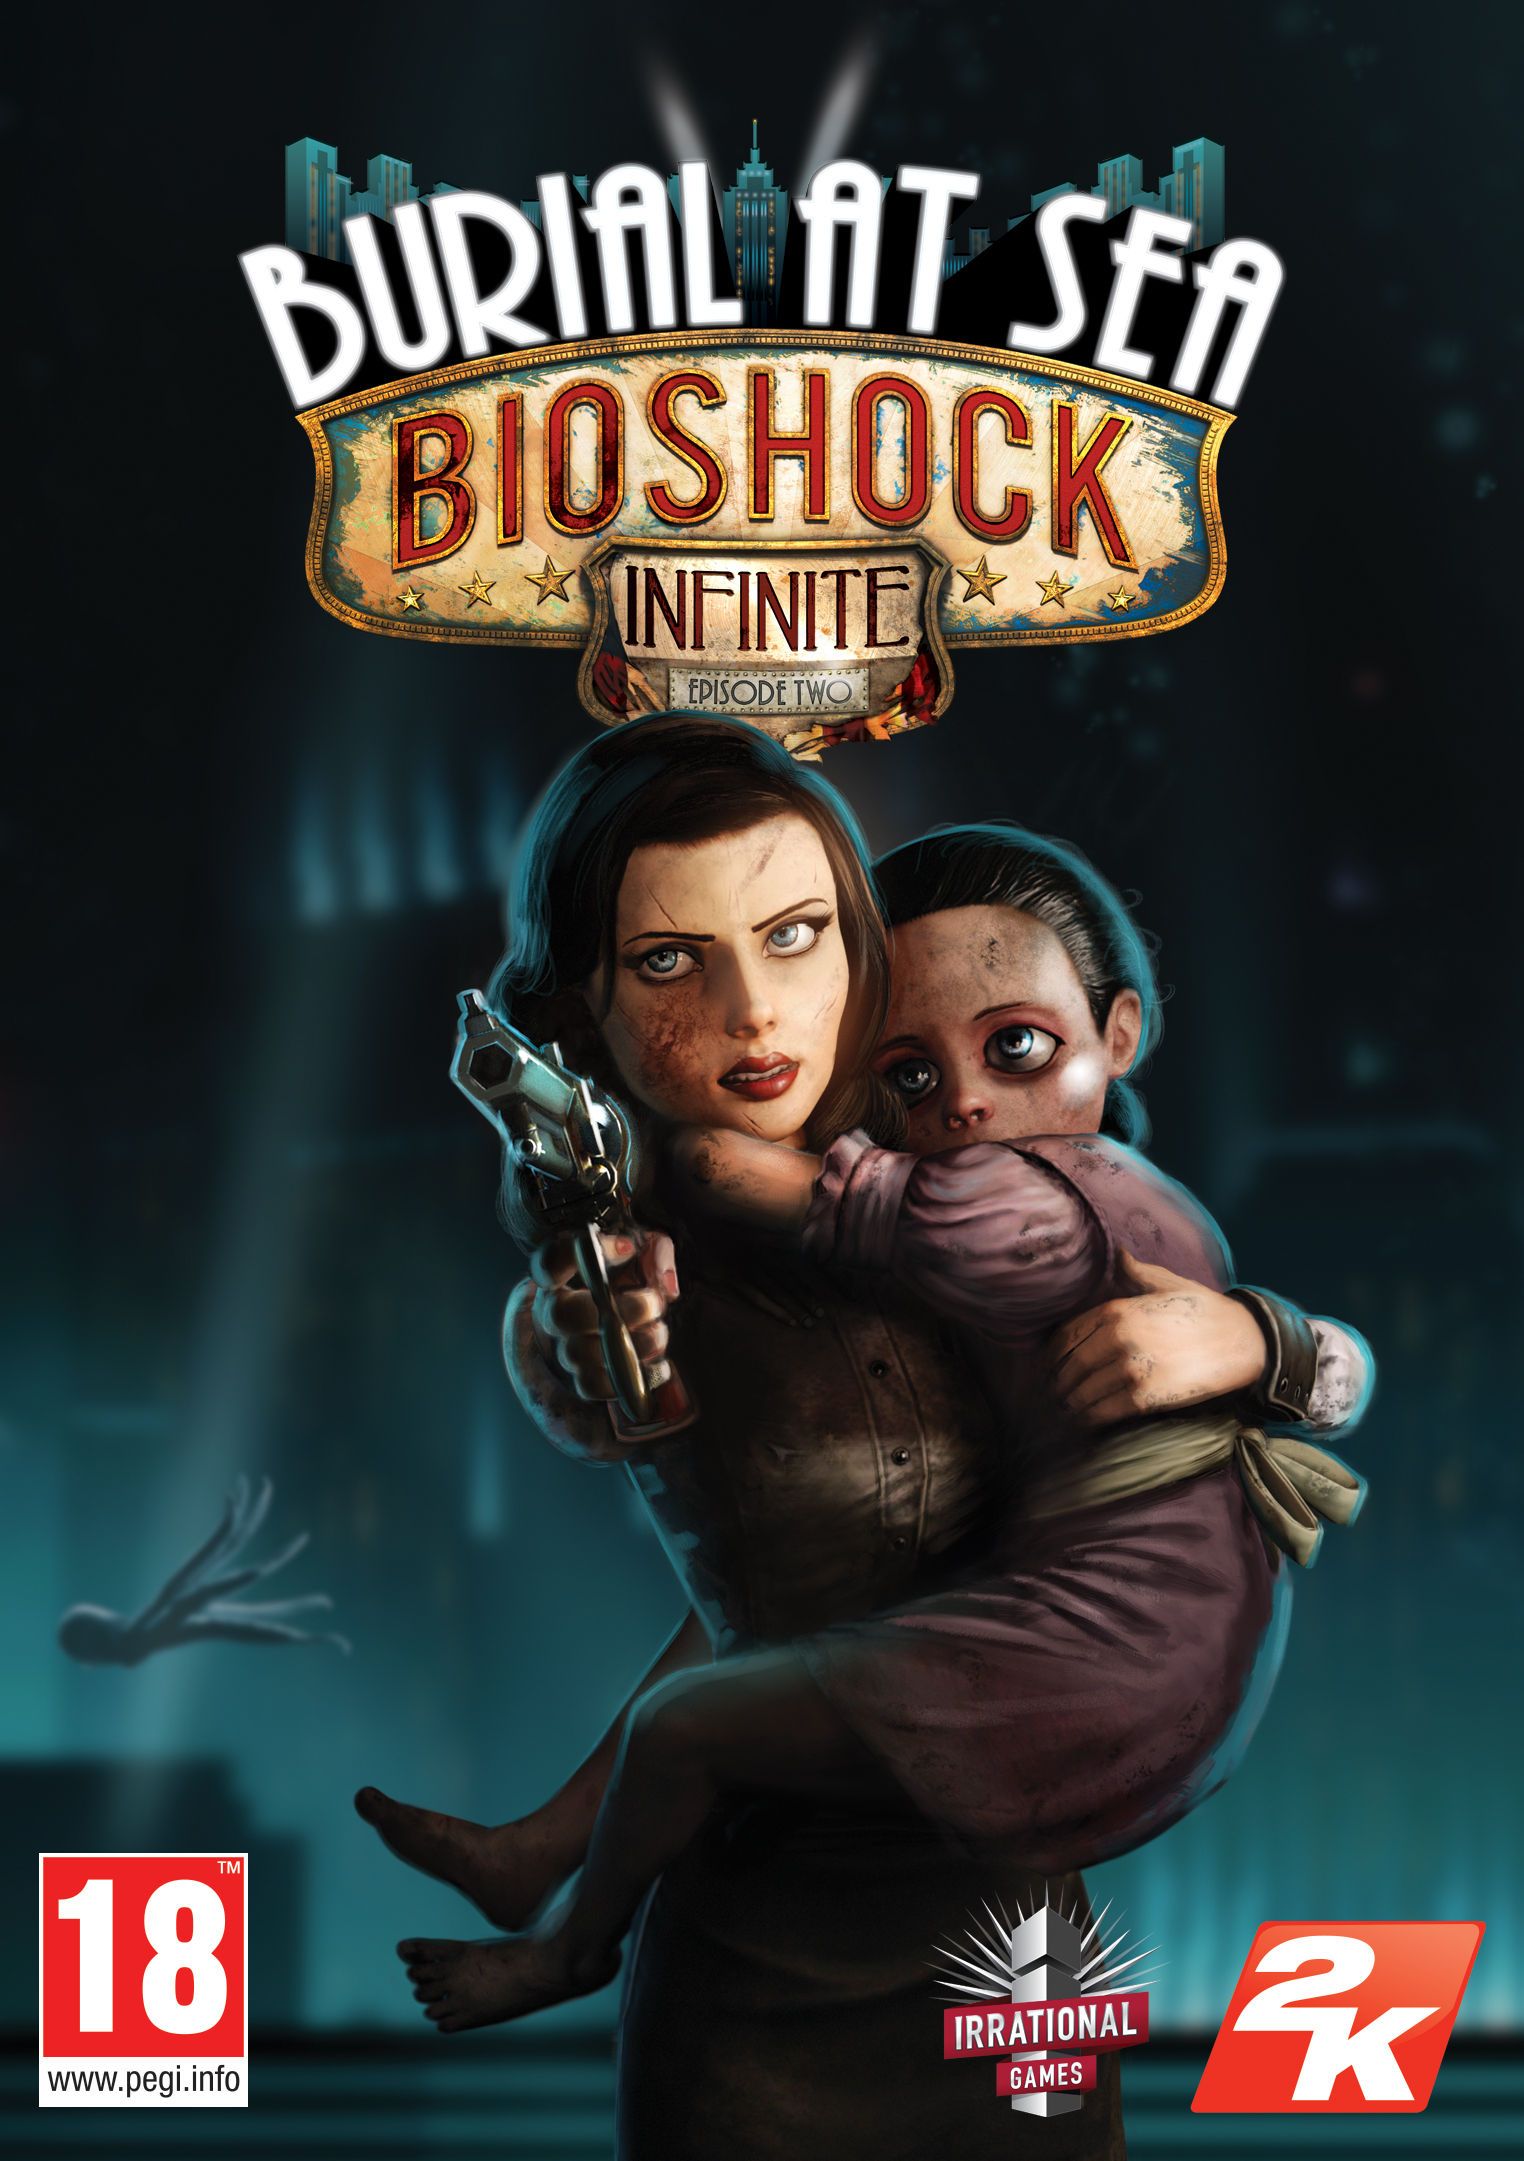 BioShock Infinite - Burial at Sea trailer